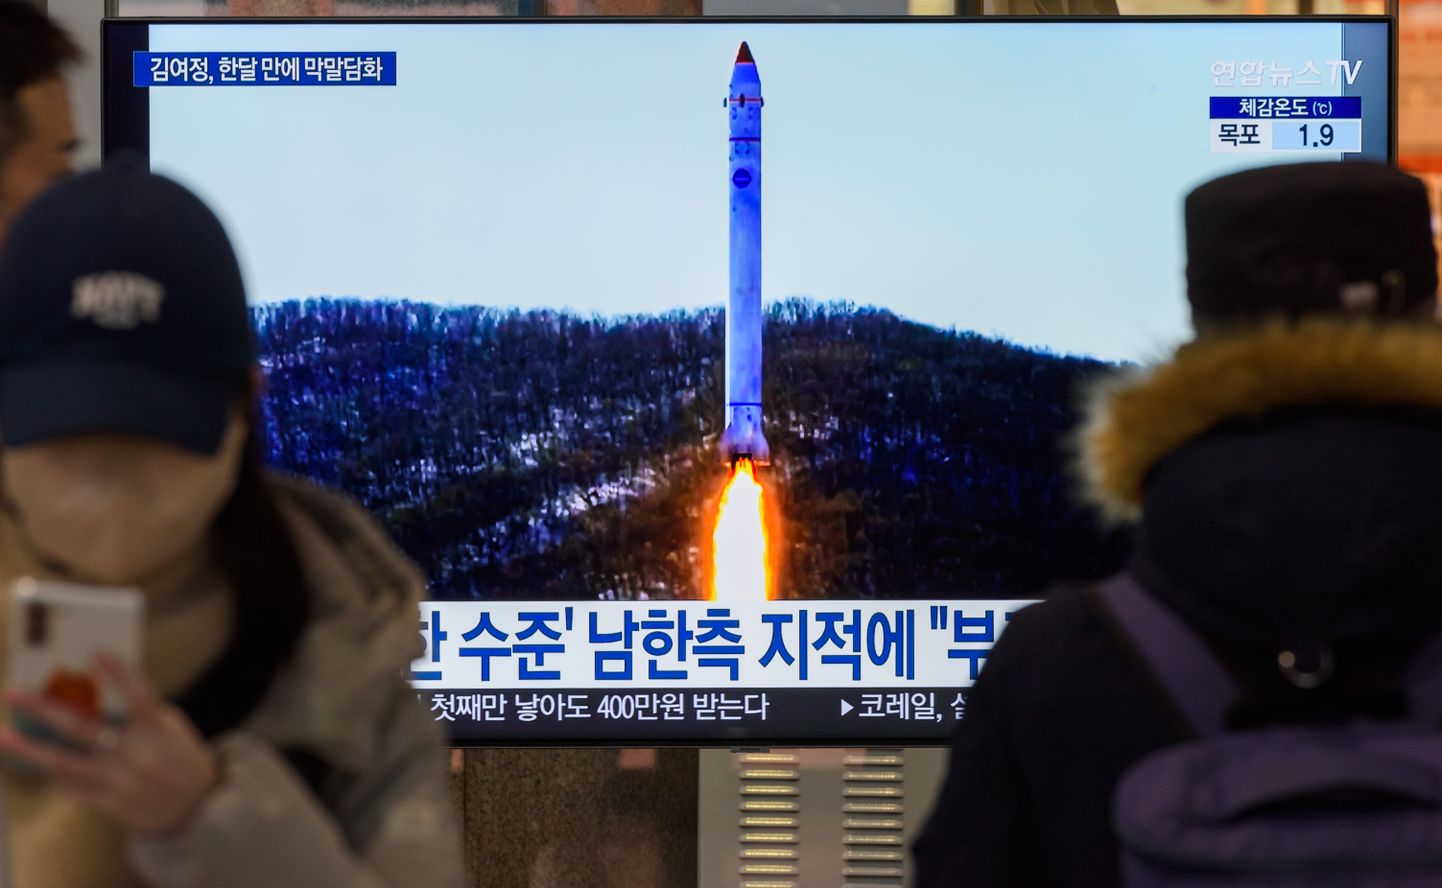 Lõuna-Korea teleuudis Põhja-Korea raketitulistamisest. Foto on illustratiivne.